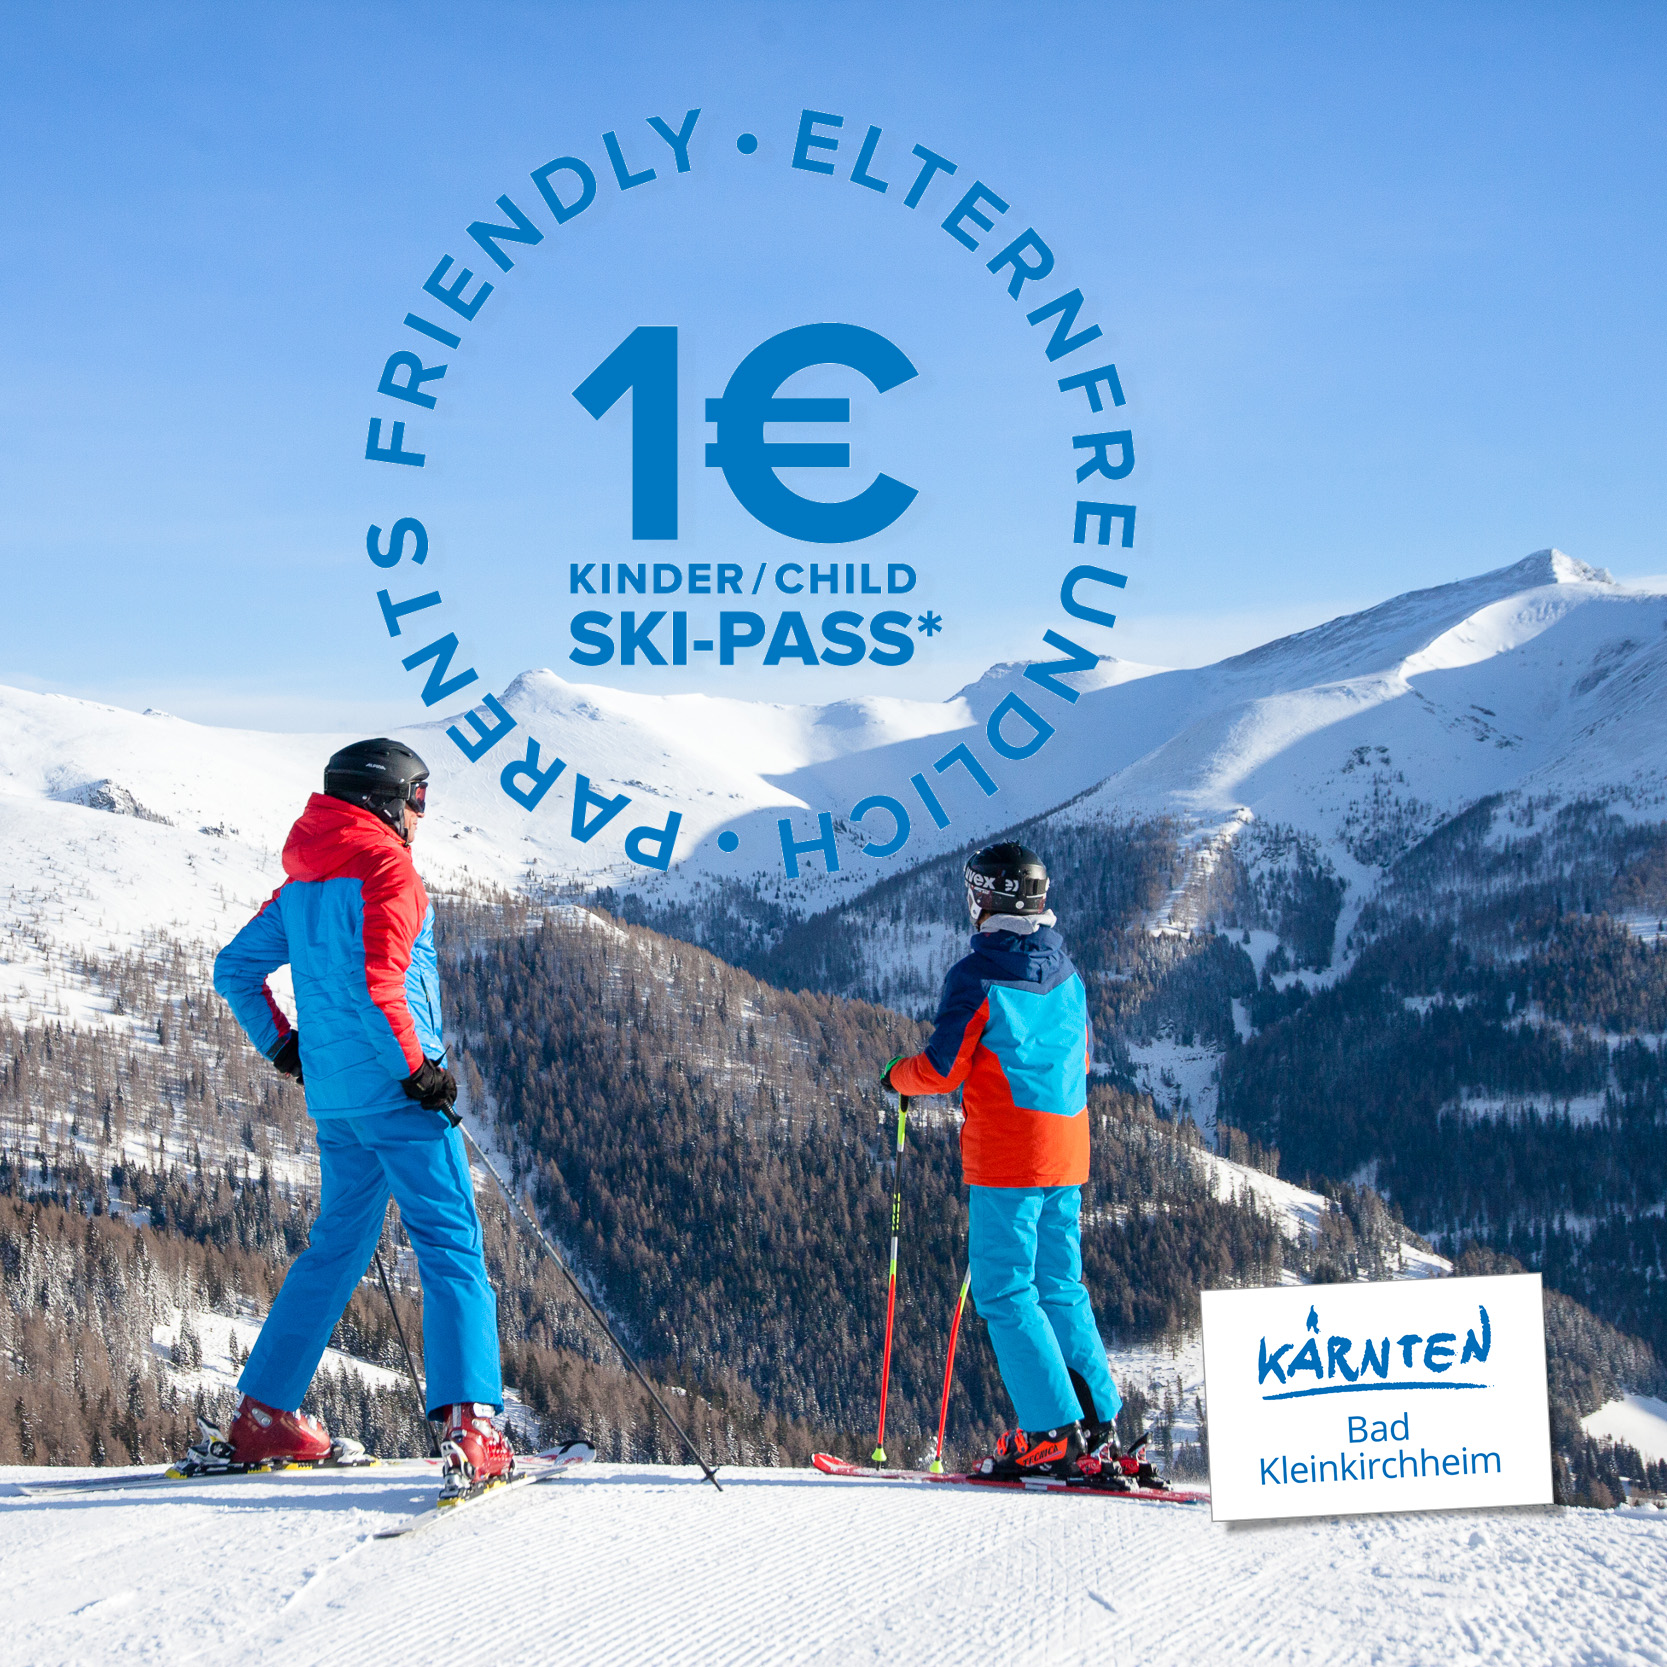 Úspory pro rodiče: 1 € na skipas pro děti v lyžařské oblasti Bad Kleinkirchheim. Zimní dovolená na slunečné straně Alp